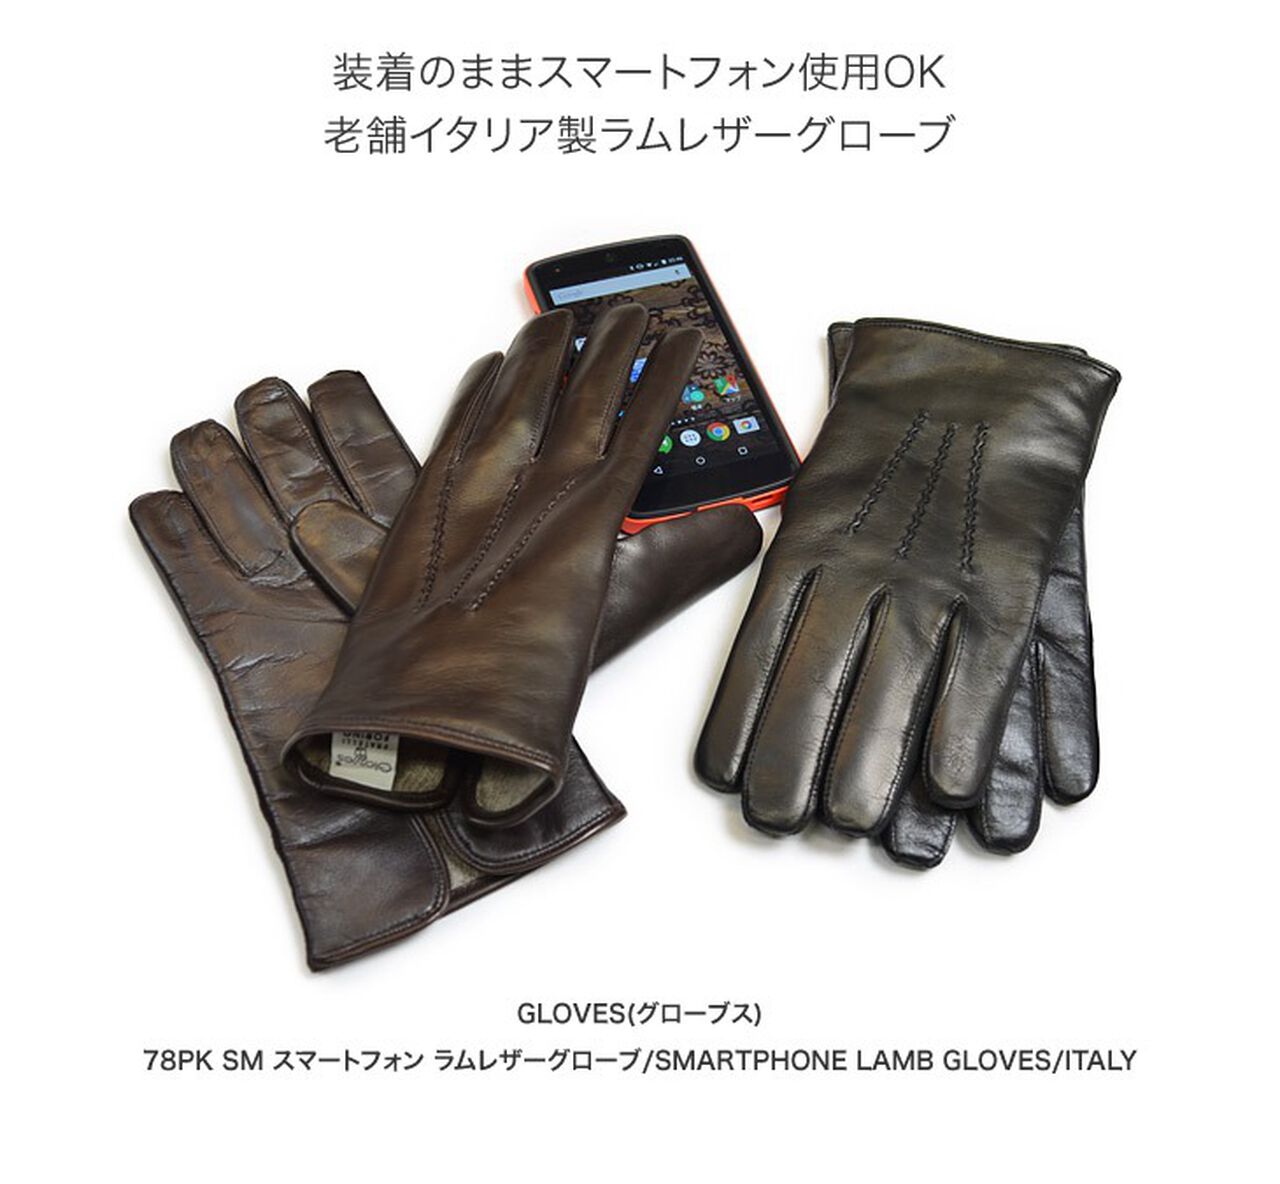 78PK-SM Smartphone Lamb Leather Gloves,Black, large image number 2